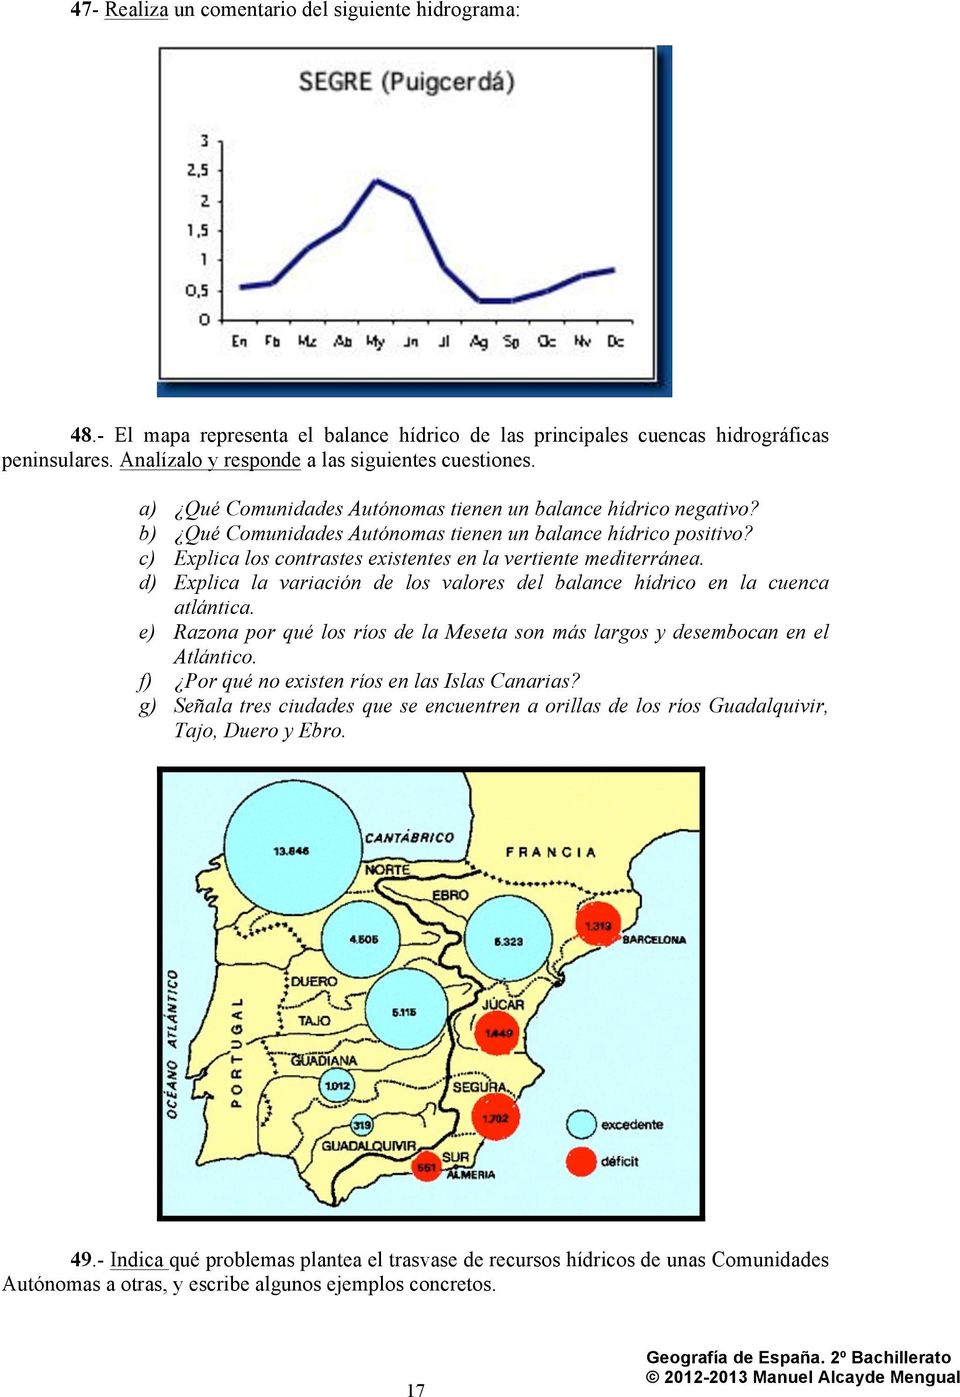 d) Explica la variación de los valores del balance hídrico en la cuenca atlántica. e) Razona por qué los ríos de la Meseta son más largos y desembocan en el Atlántico.